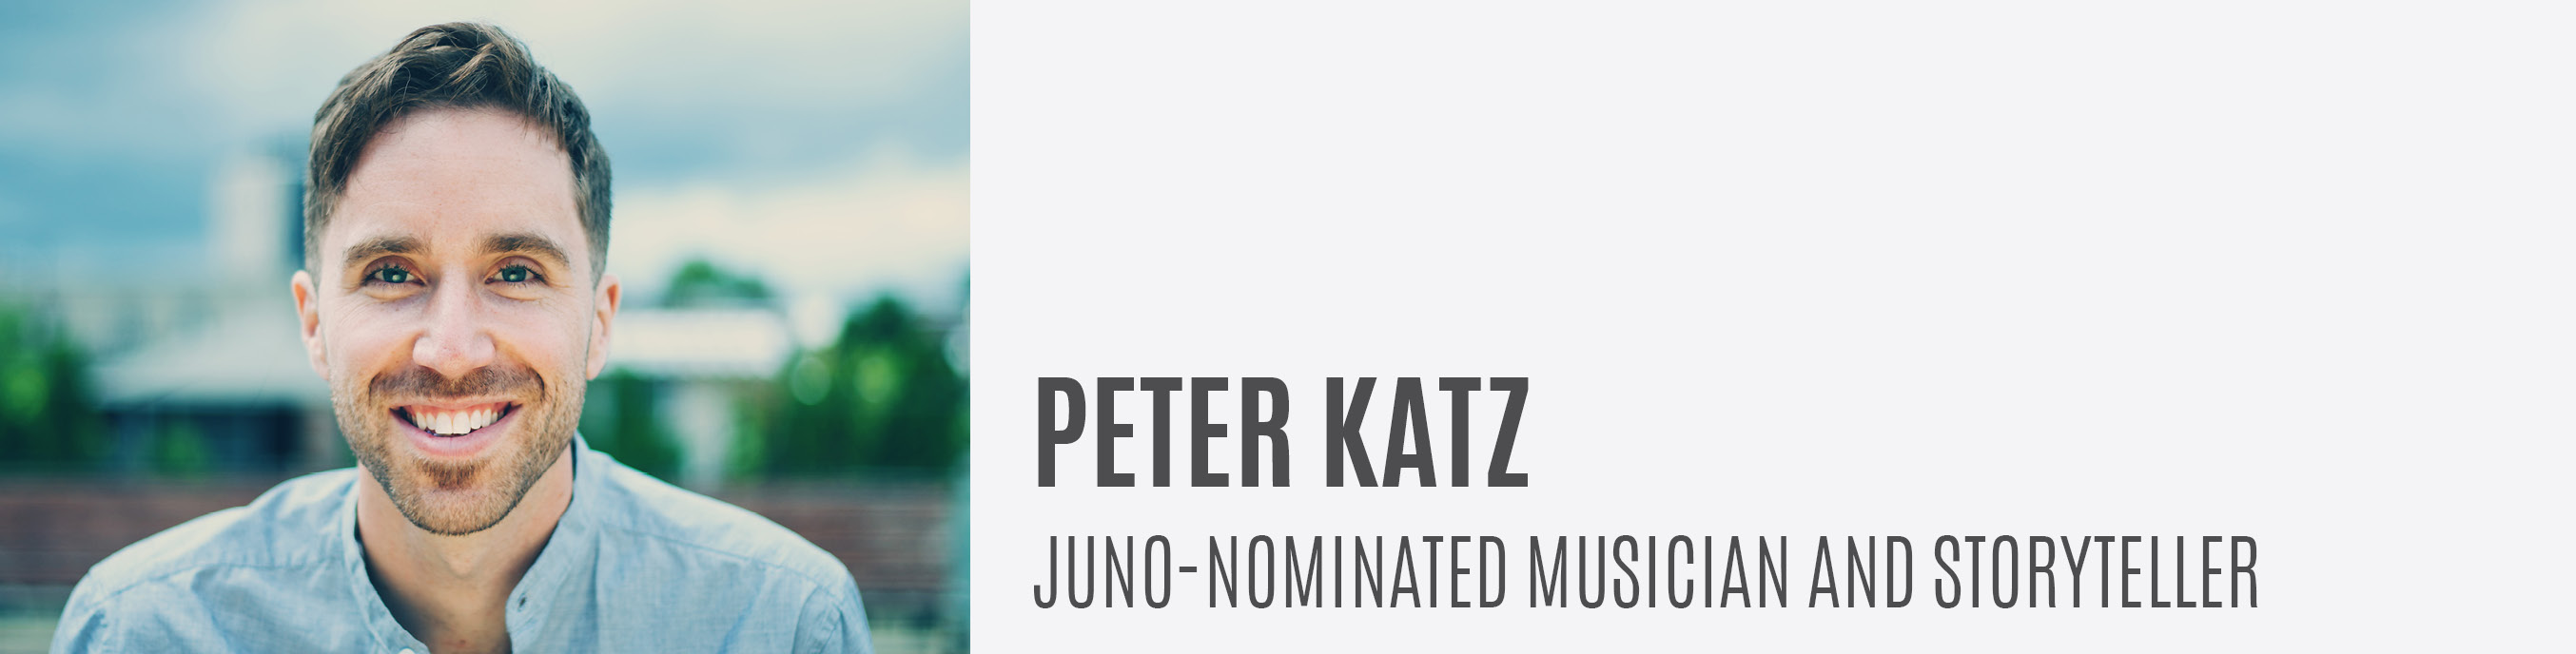 Peter Katz